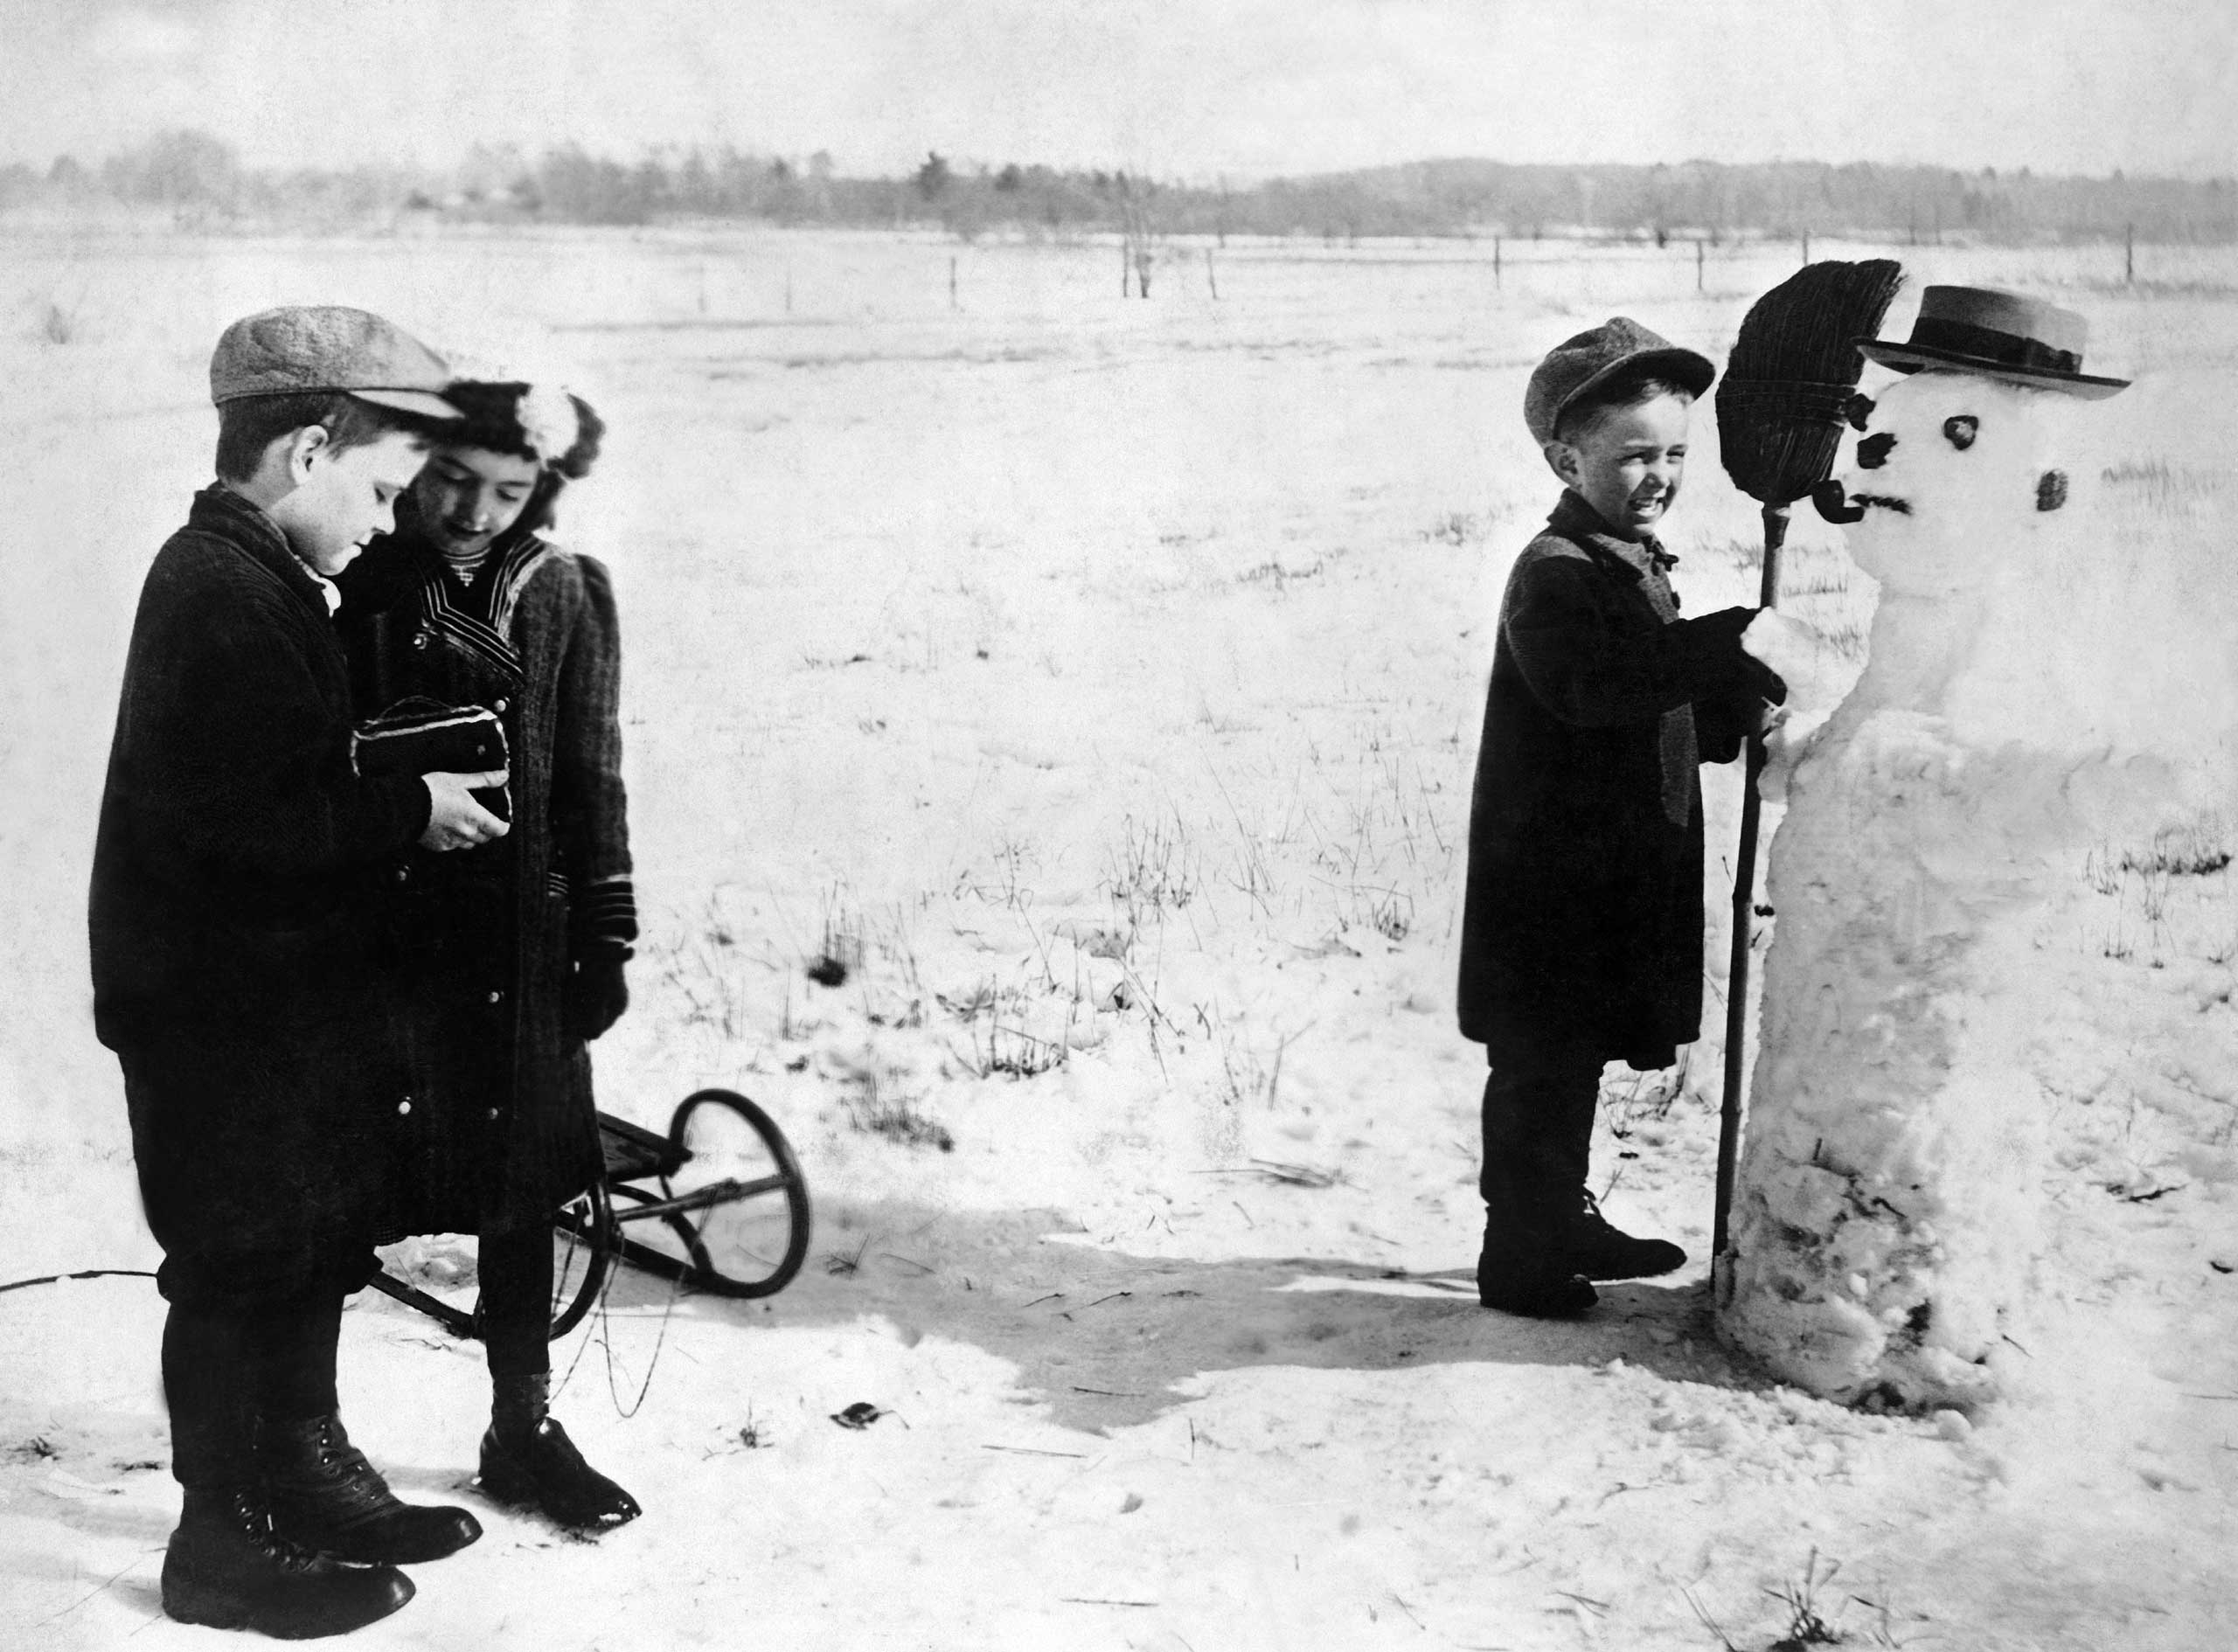 Children take a photo with their snowman, circa 1930s